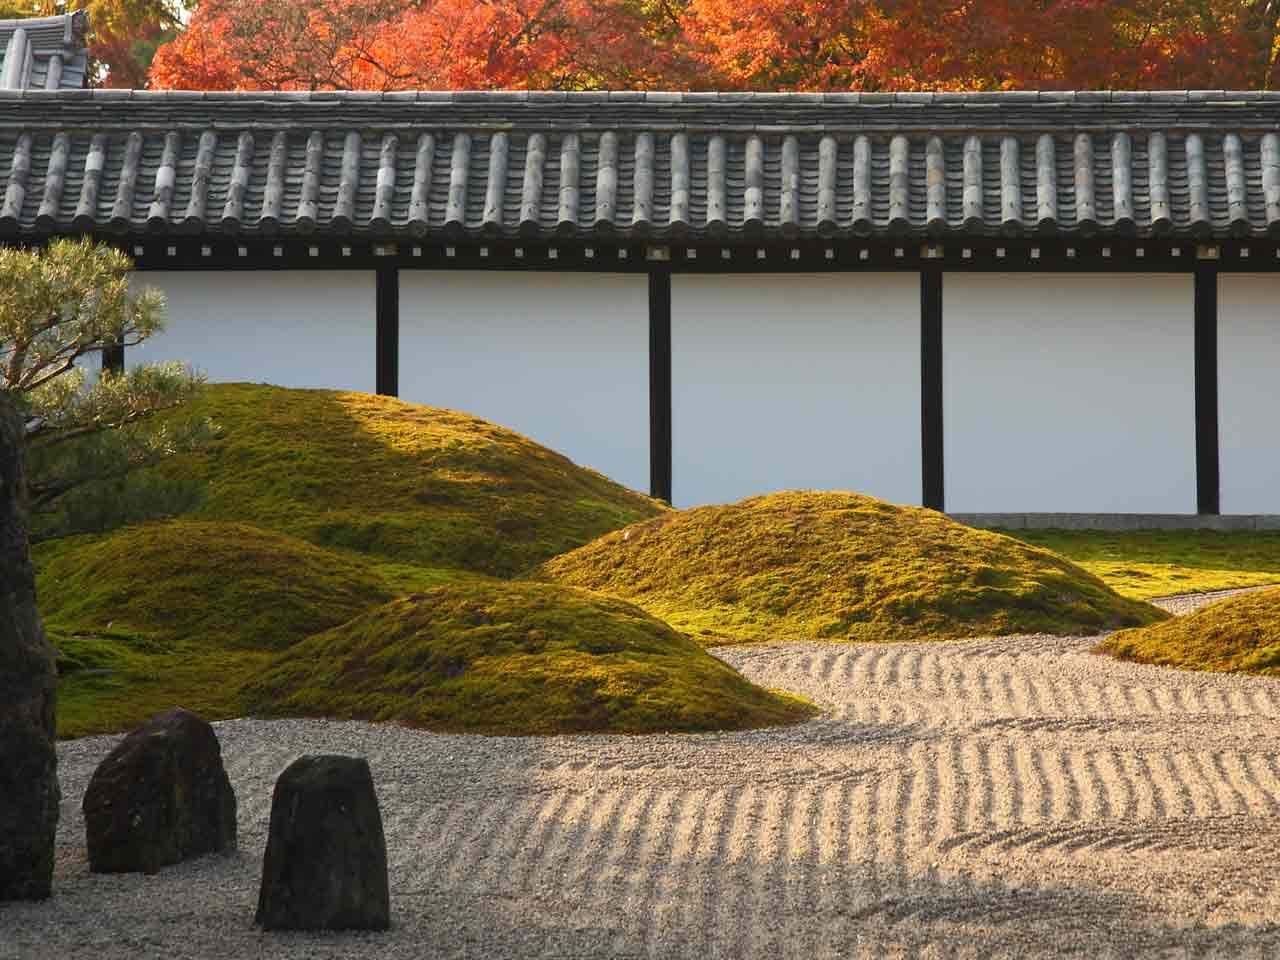 Hojo zen garden of Tofuku-ji